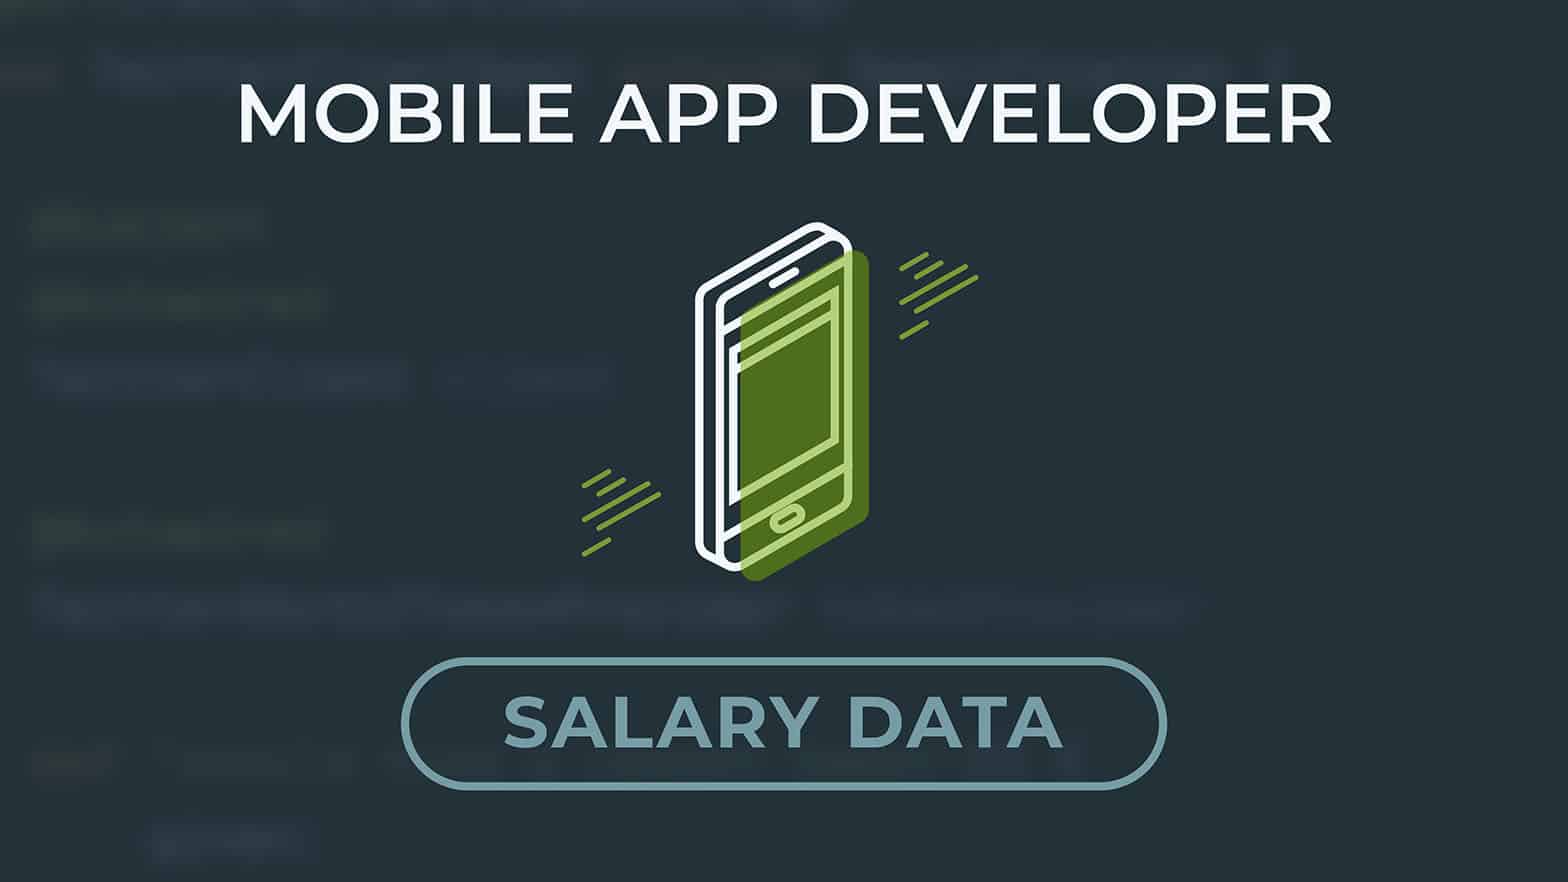 Mobiele app ontwikkelaar salaris